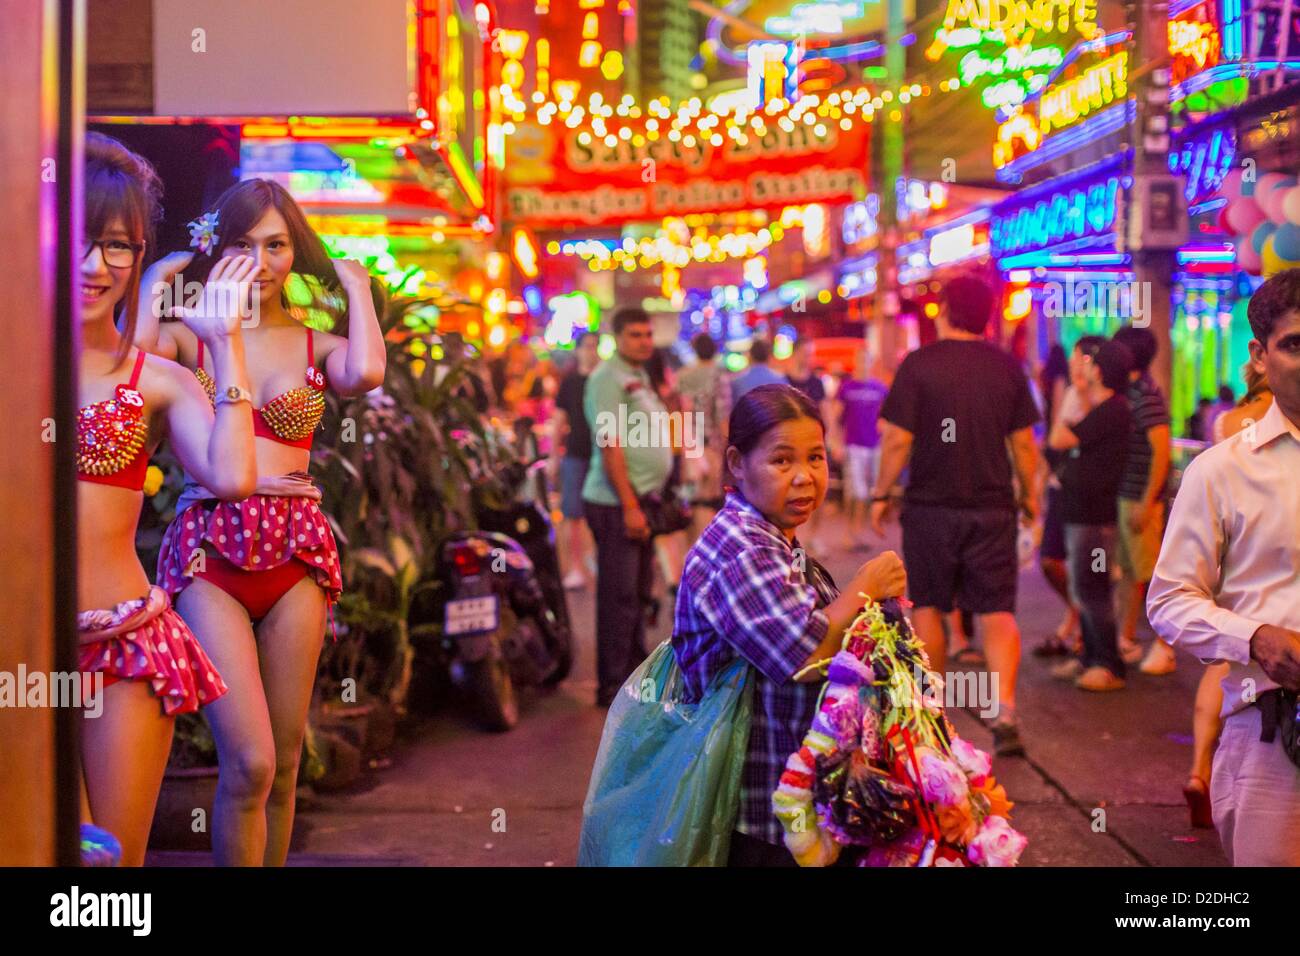 Gen 12, 2013 - Bangkok, Thailandia - una donna che vende giarrettiere ai lavoratori nel quartiere a luci rosse di Soi Cowboy cammina per la strada tra ''Ladyboy'' animatori e turisti. In Thai, la ladyboys sono chiamati kathoey. Molti lavorano in divertimento e vita notturna e settori dell'economia thailandese. La prostituzione in Thailandia è illegale, anche se in pratica è tollerata e in parte disciplinati. La prostituzione è attuata apertamente in tutto il paese. Il numero di prostitute è difficile da determinare, le stime variano ampiamente. Poiché la guerra del Vietnam, Thailandia ha acquisito una notorietà internazionale amon Foto Stock